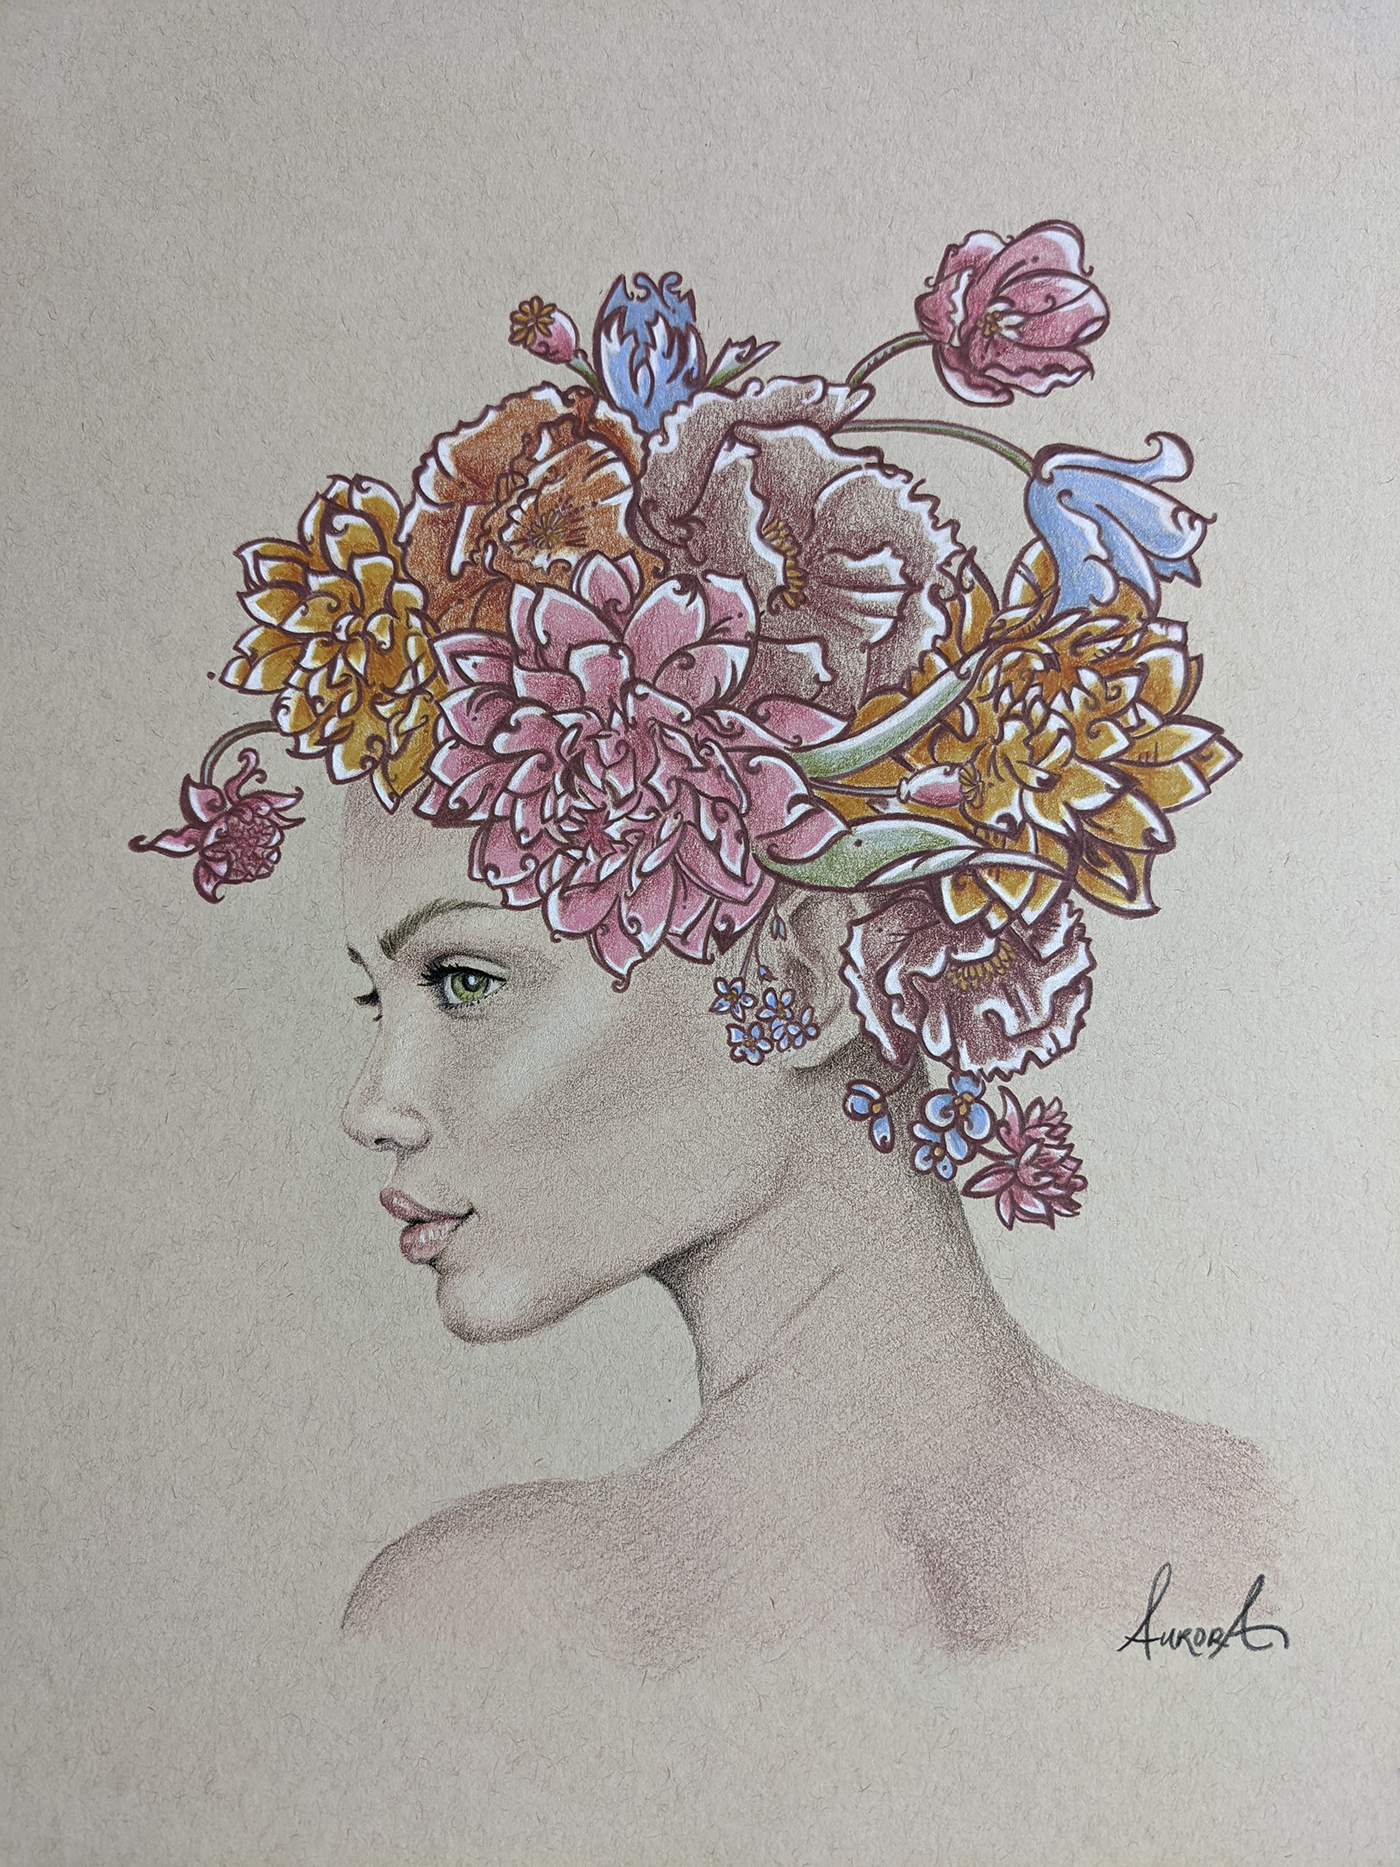 Flourish and Bloom portrait by Aurora Whittet Best